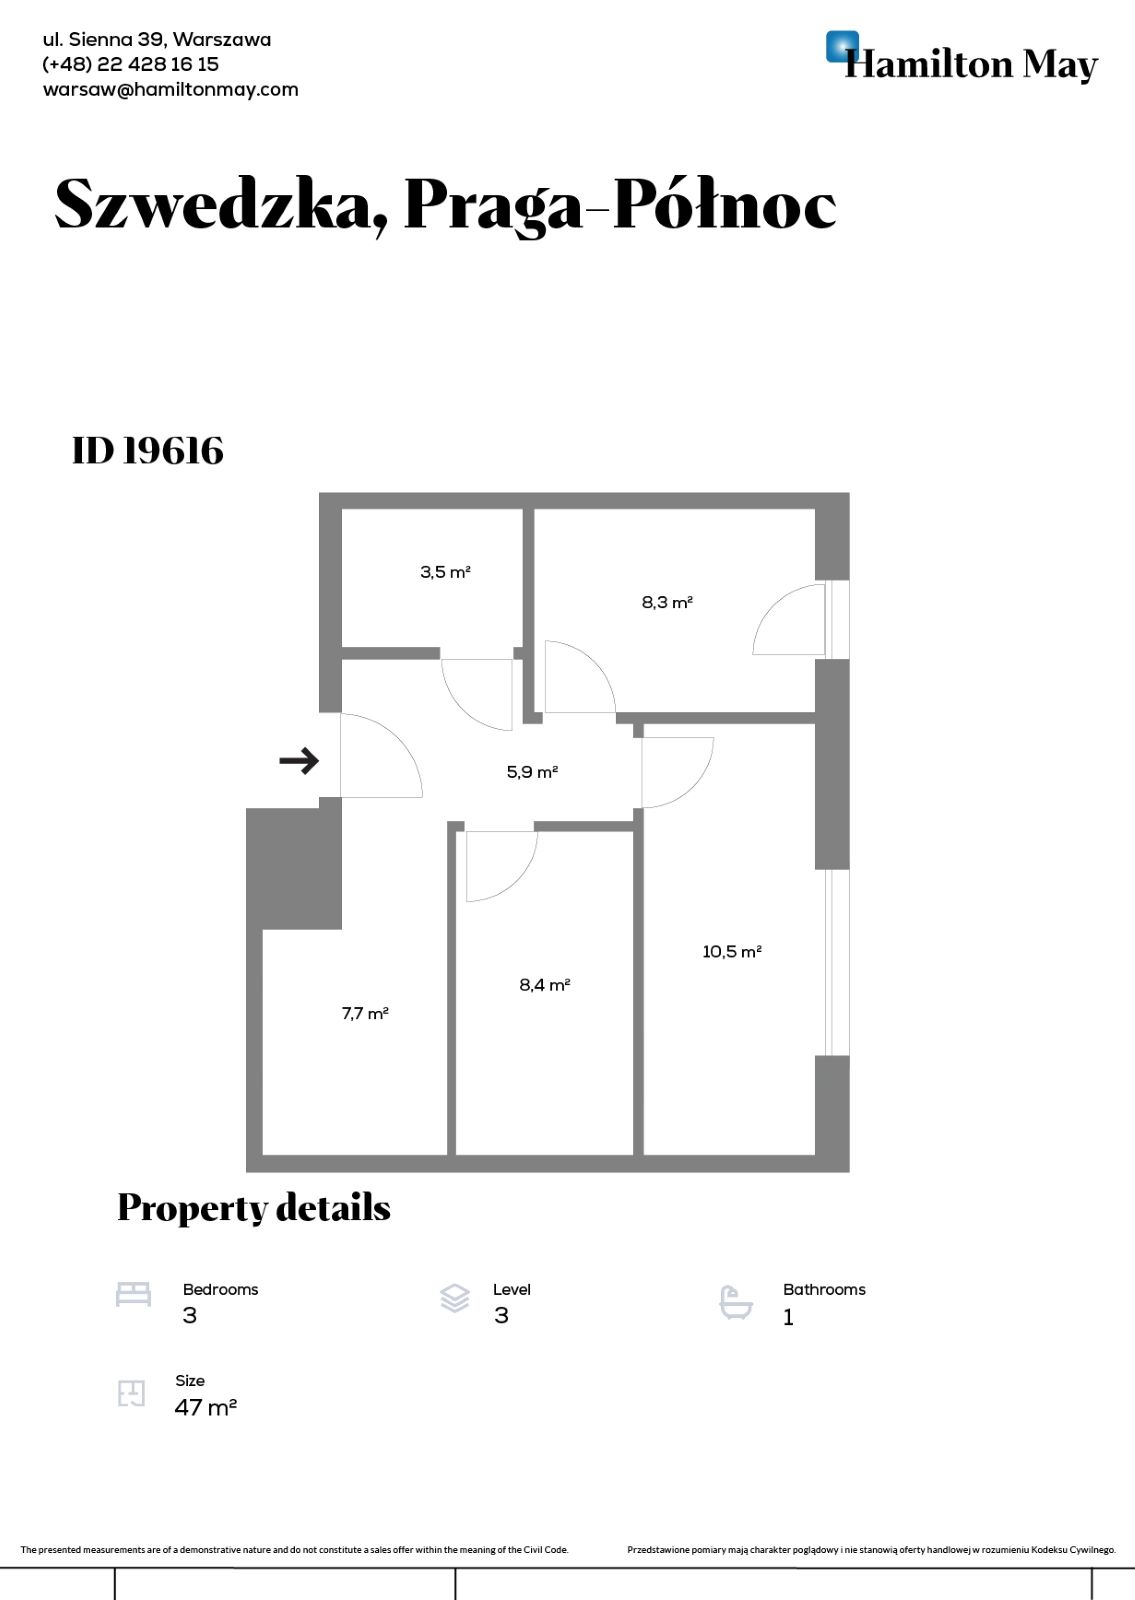 Lokal inwestycyjny/apartament w inwestycji Bohema - plan